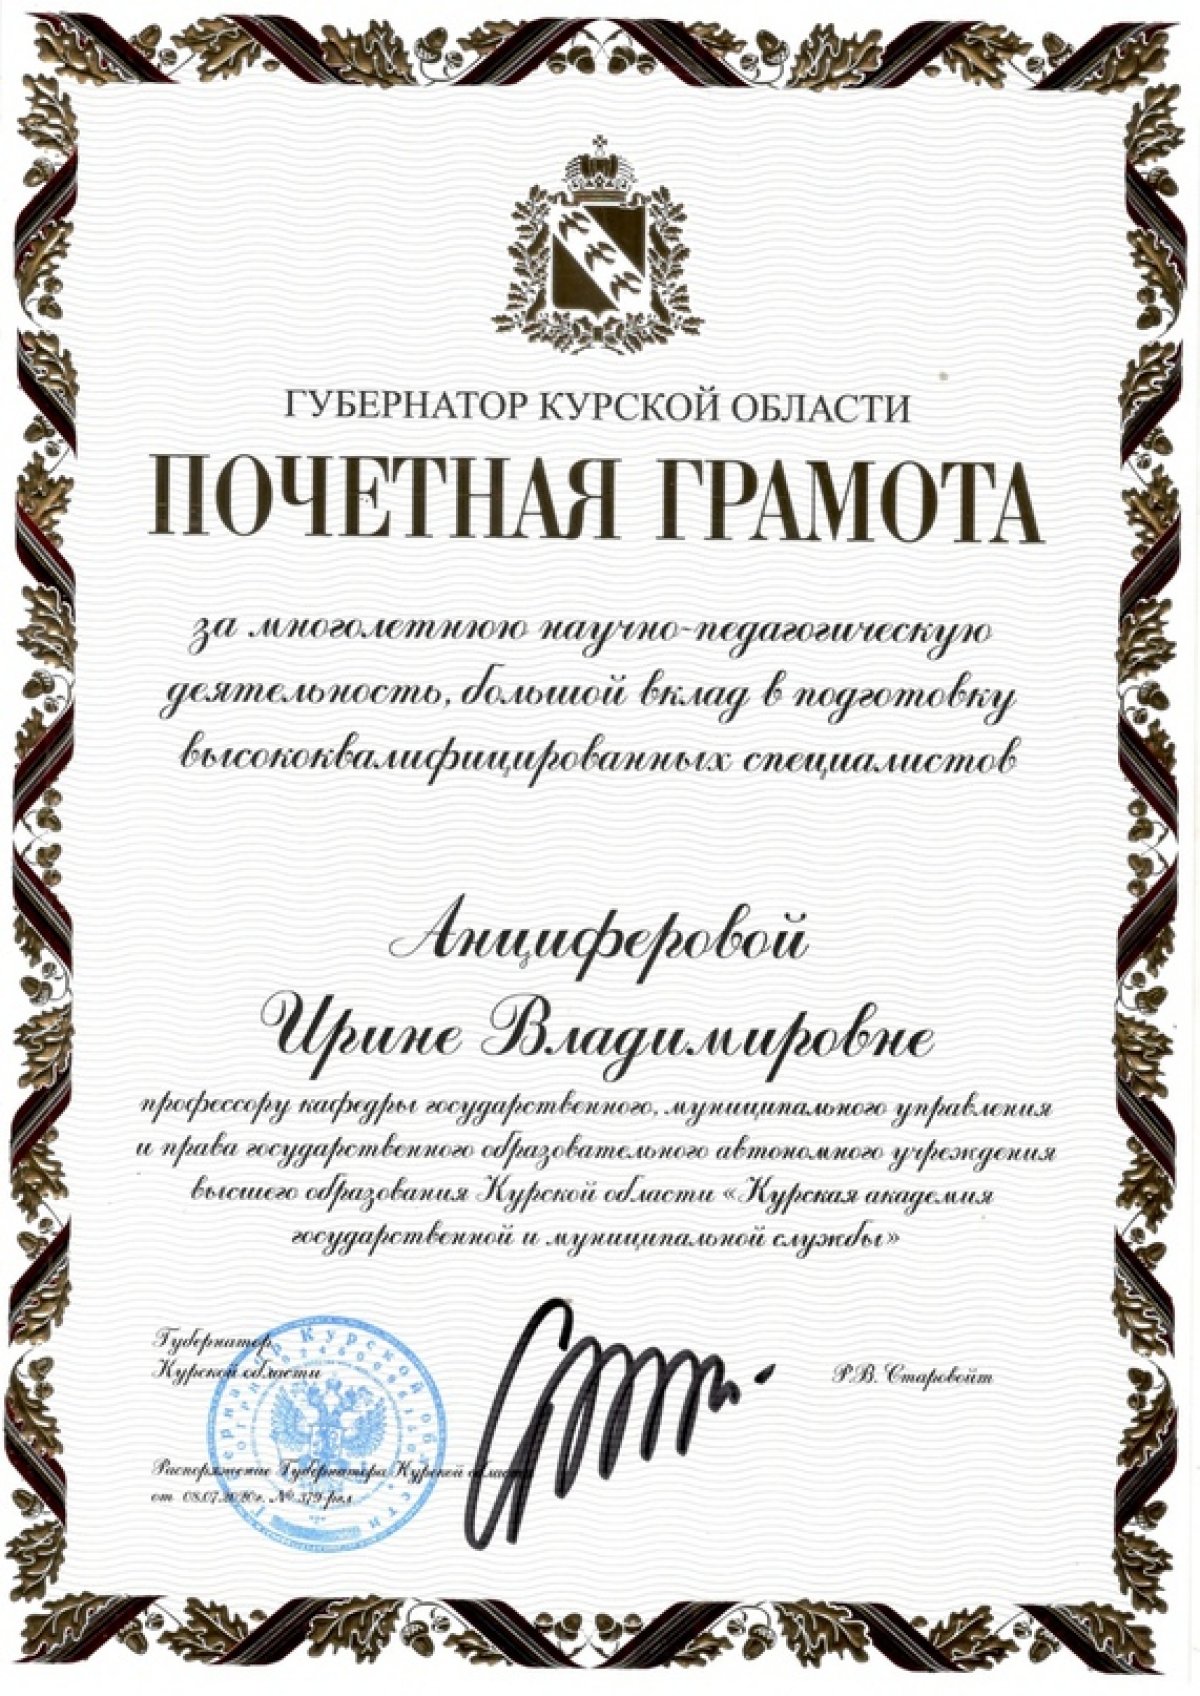 О награждении Почетной грамотой Курской области